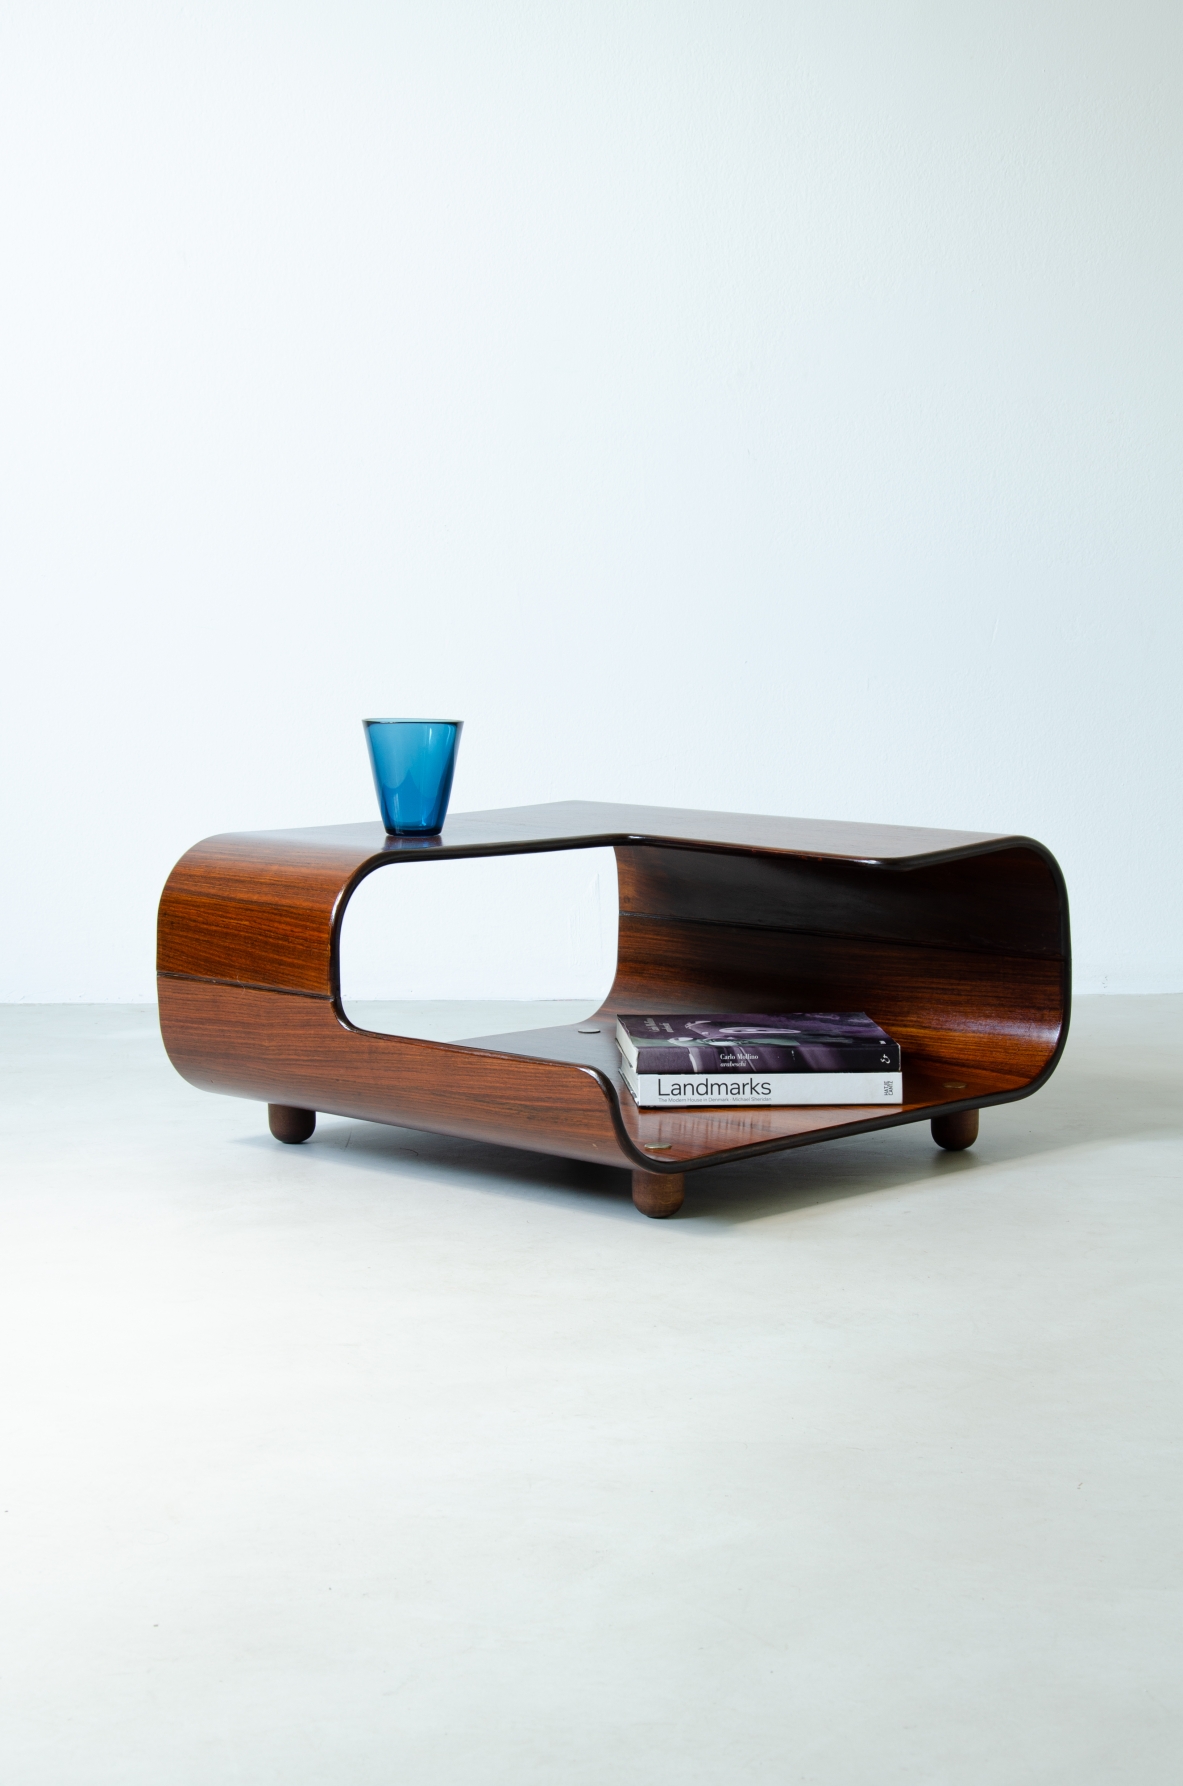 Tavolino in legno curvato con due piani sagomati.  Manifattura italiana, 1960ca.